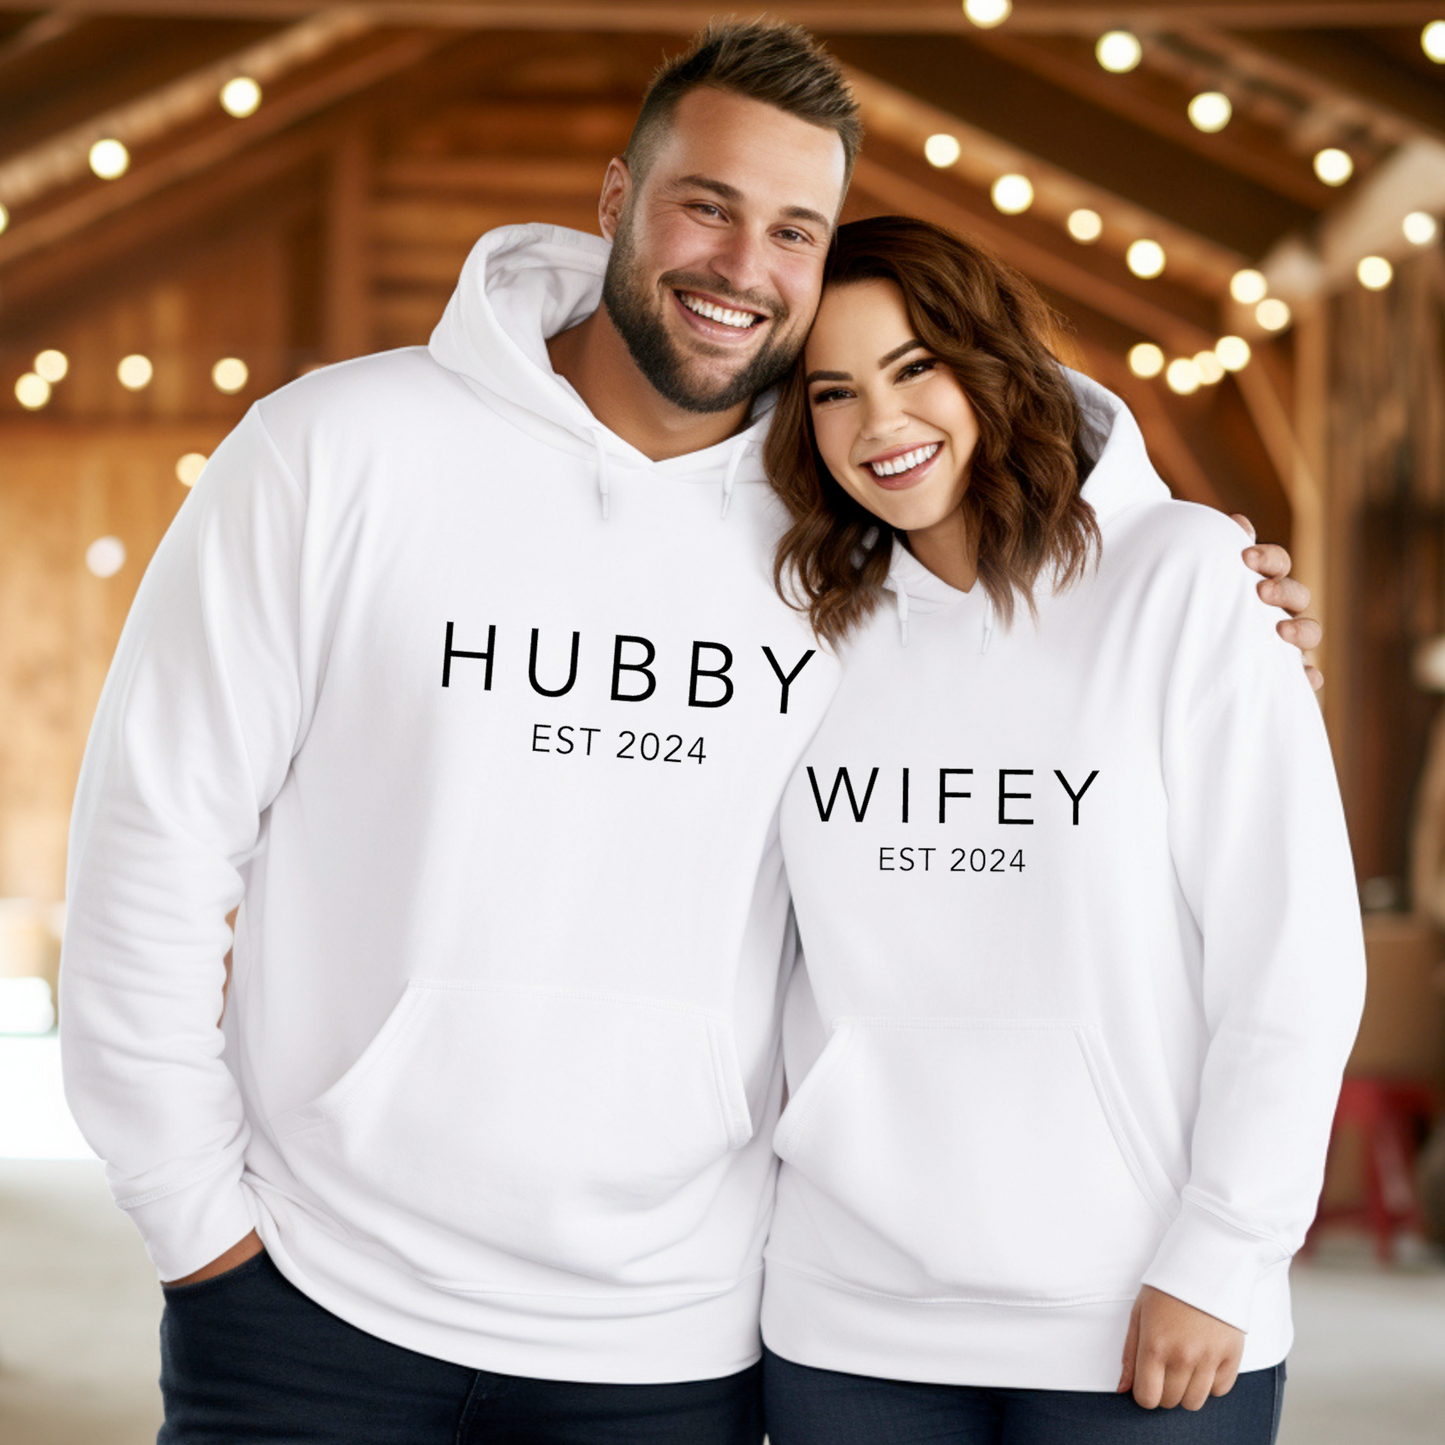 Hubby & Wifey EST 2024